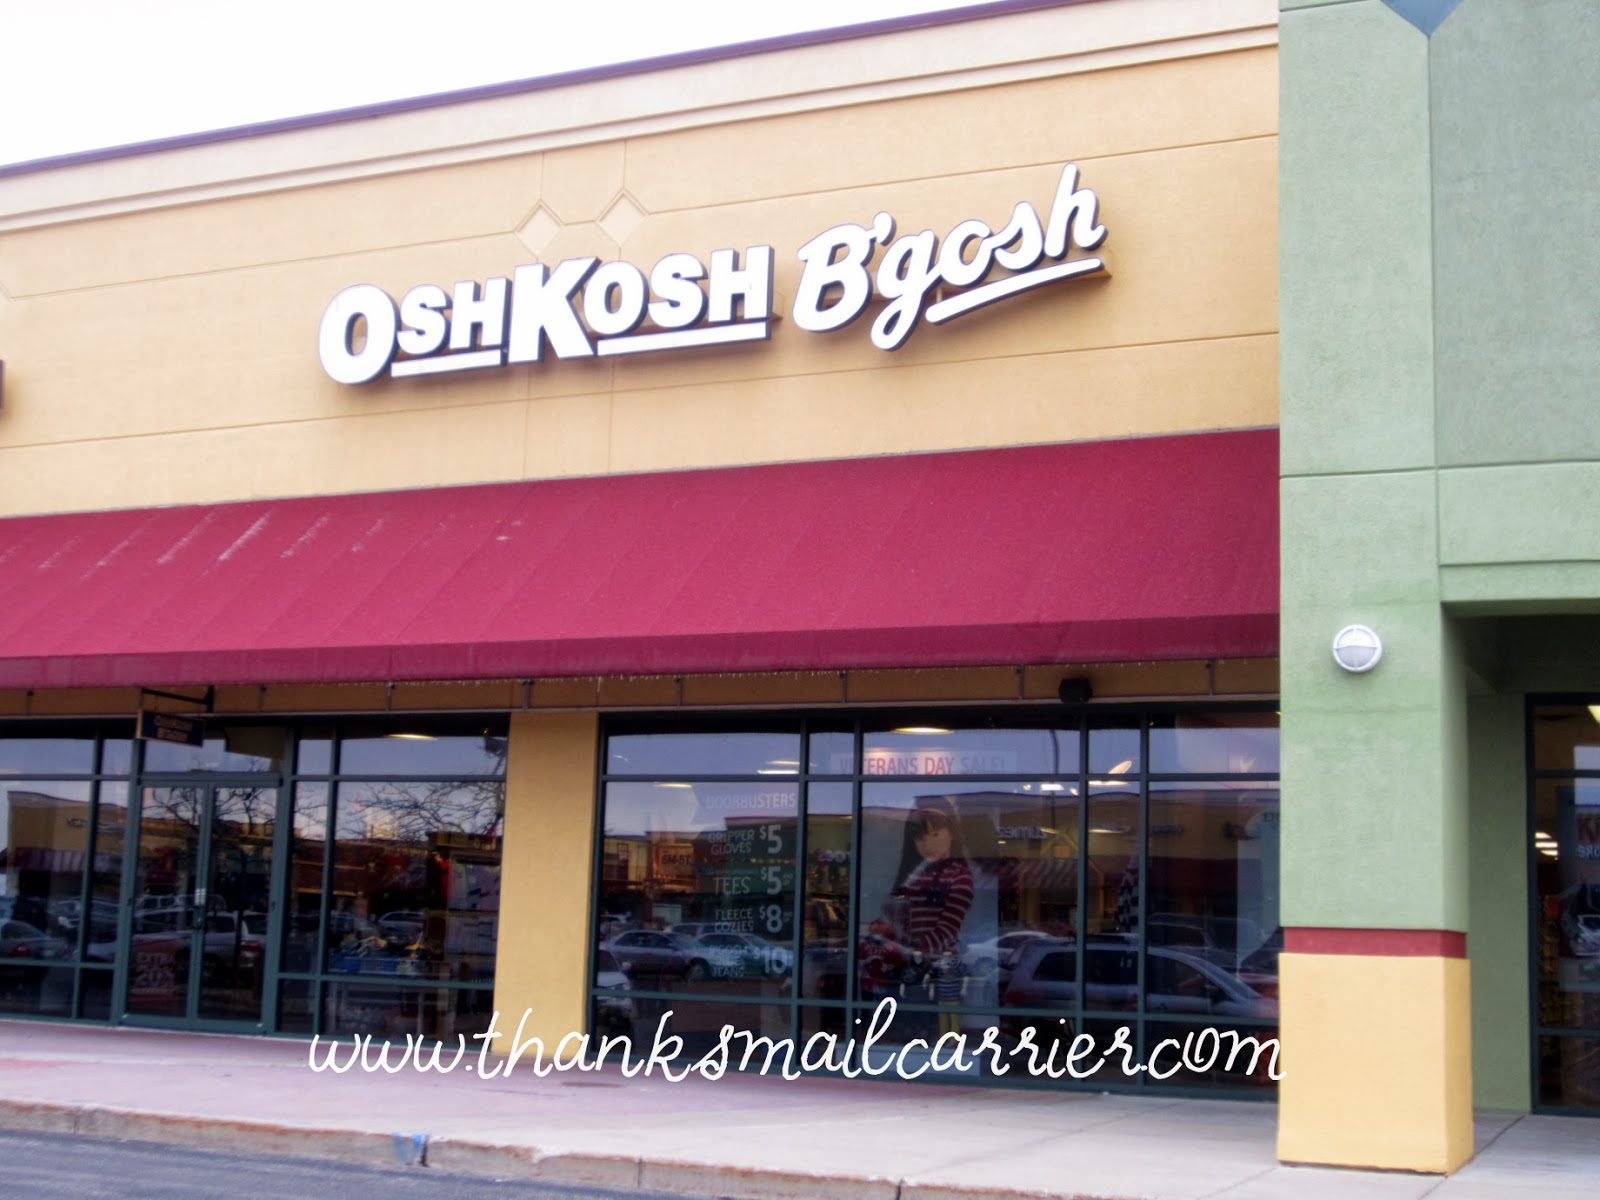 OshKosh stores